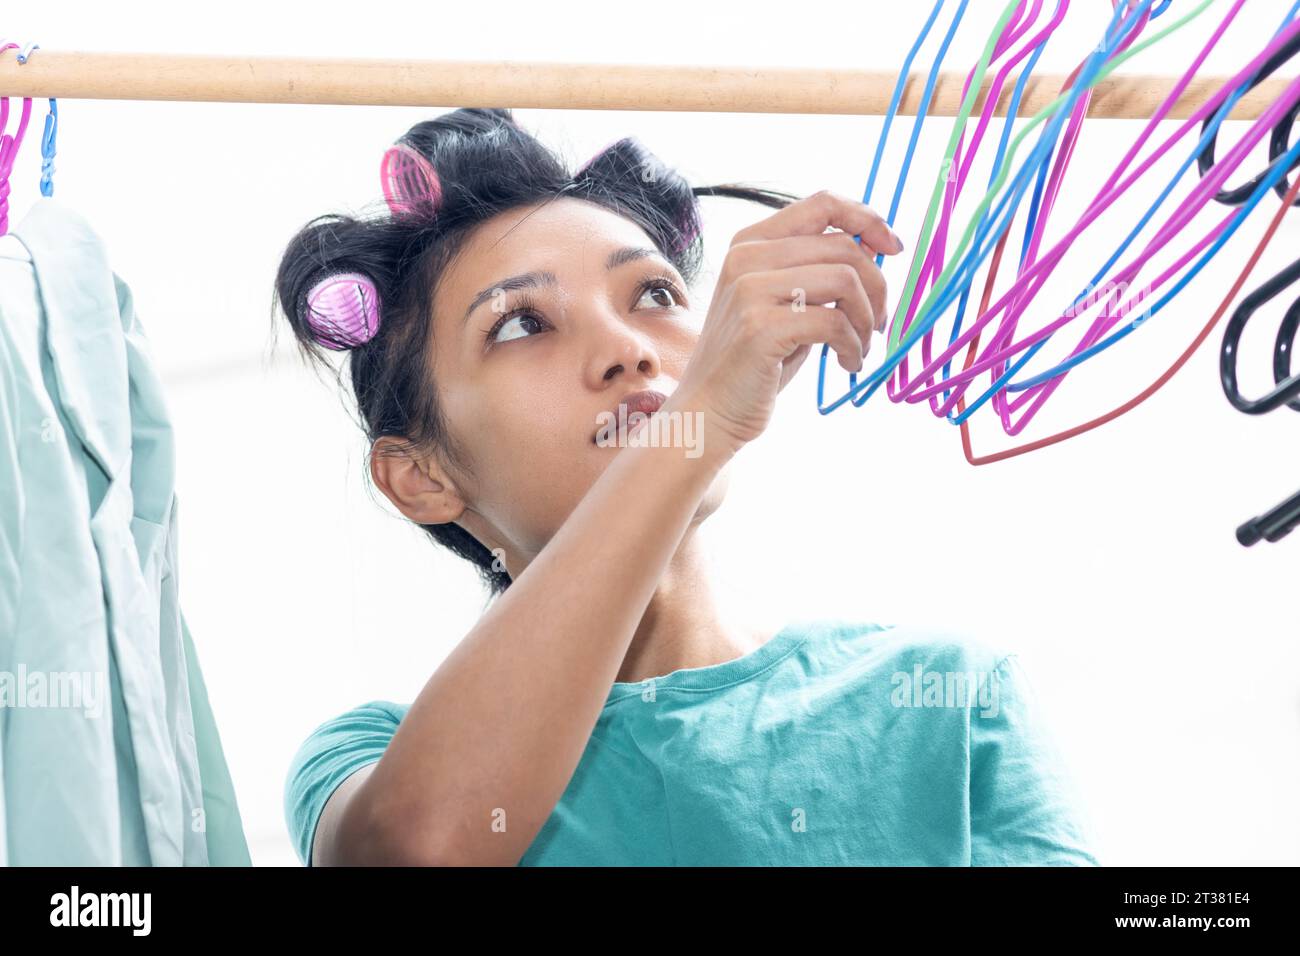 Une jeune femme avec des bigoudis dans les cheveux accroche du linge mouillé sur des cintres Banque D'Images